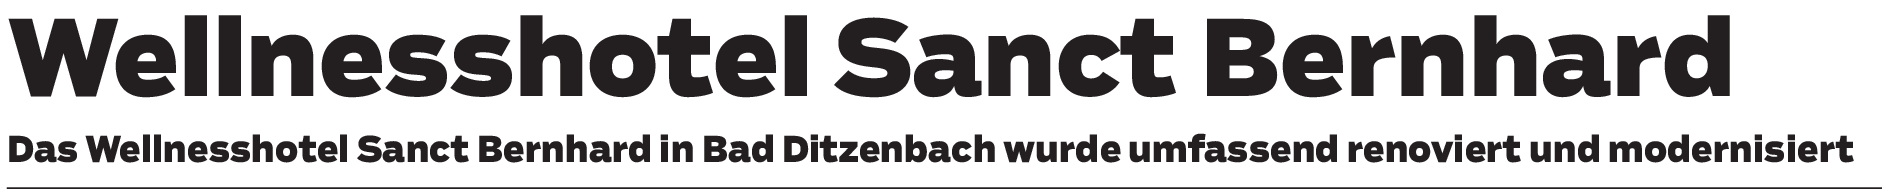 Wellnesshotel Sanct Bernhard in Bad Ditzenbach: Entspannte Auszeit direkt vor der Haustür